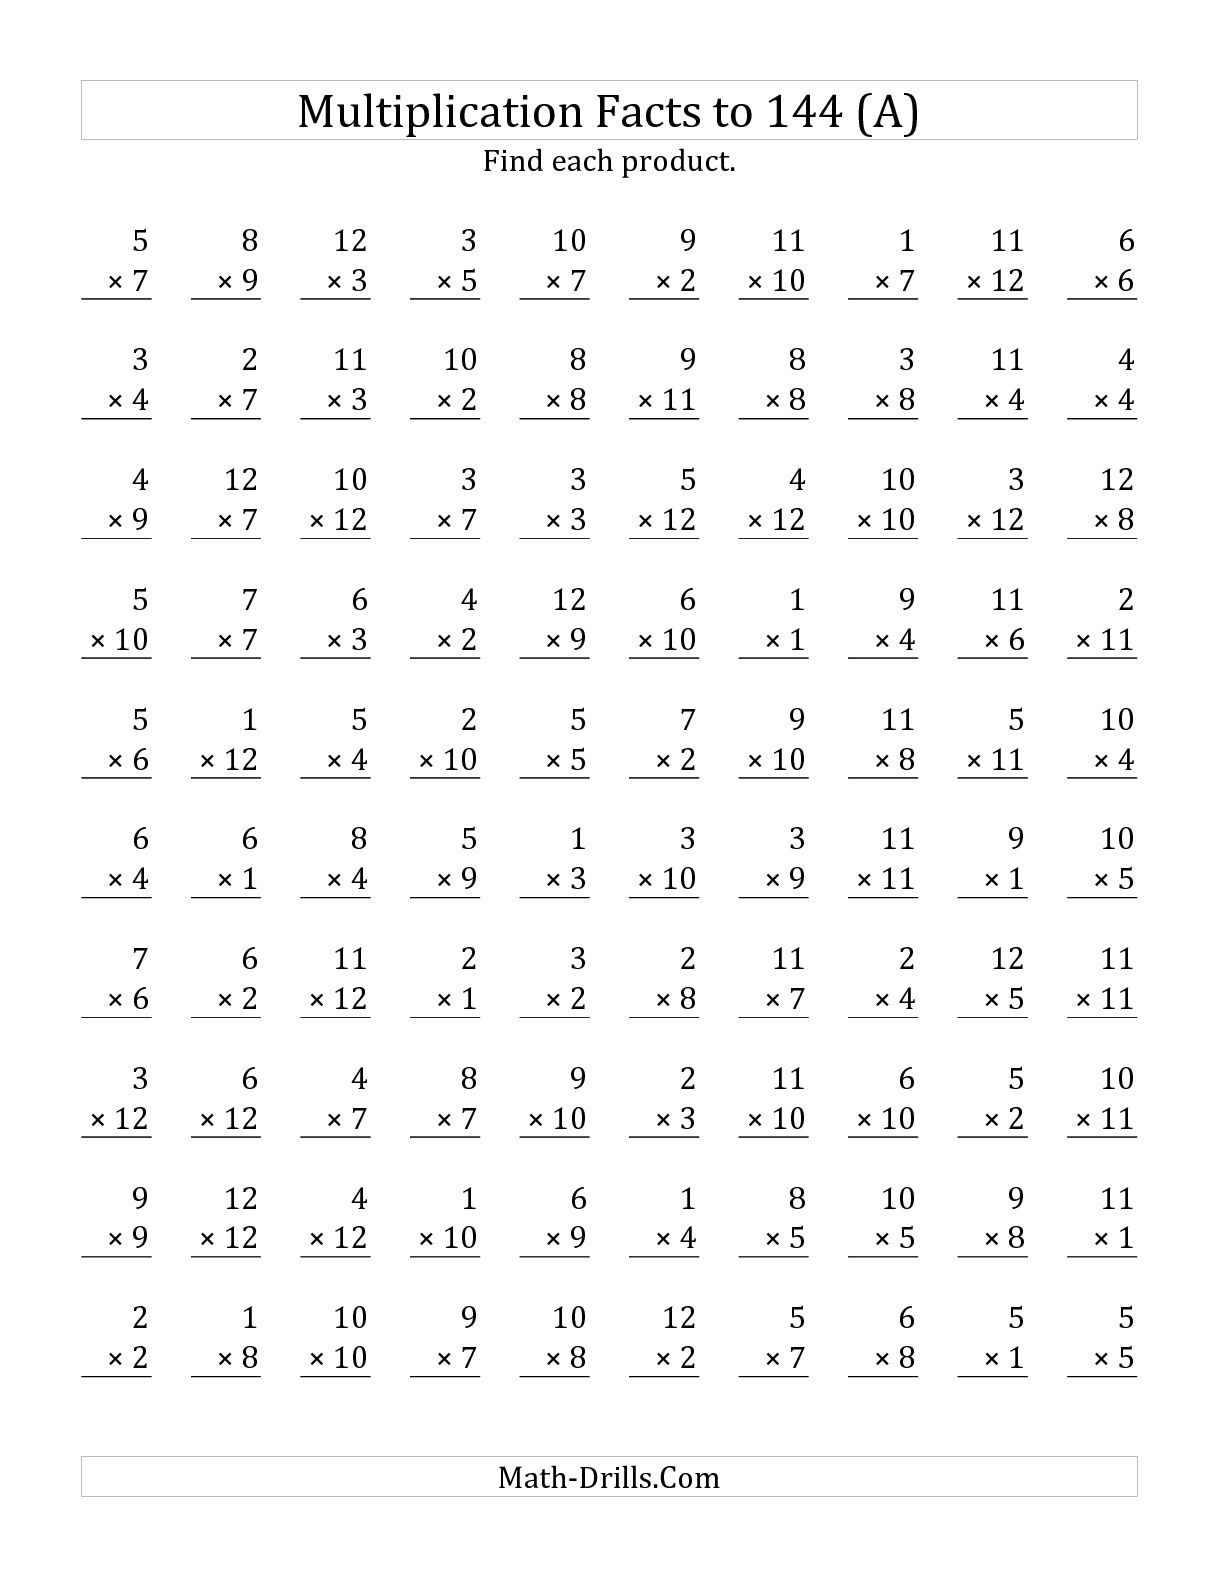 5 Min Multiplication Worksheets